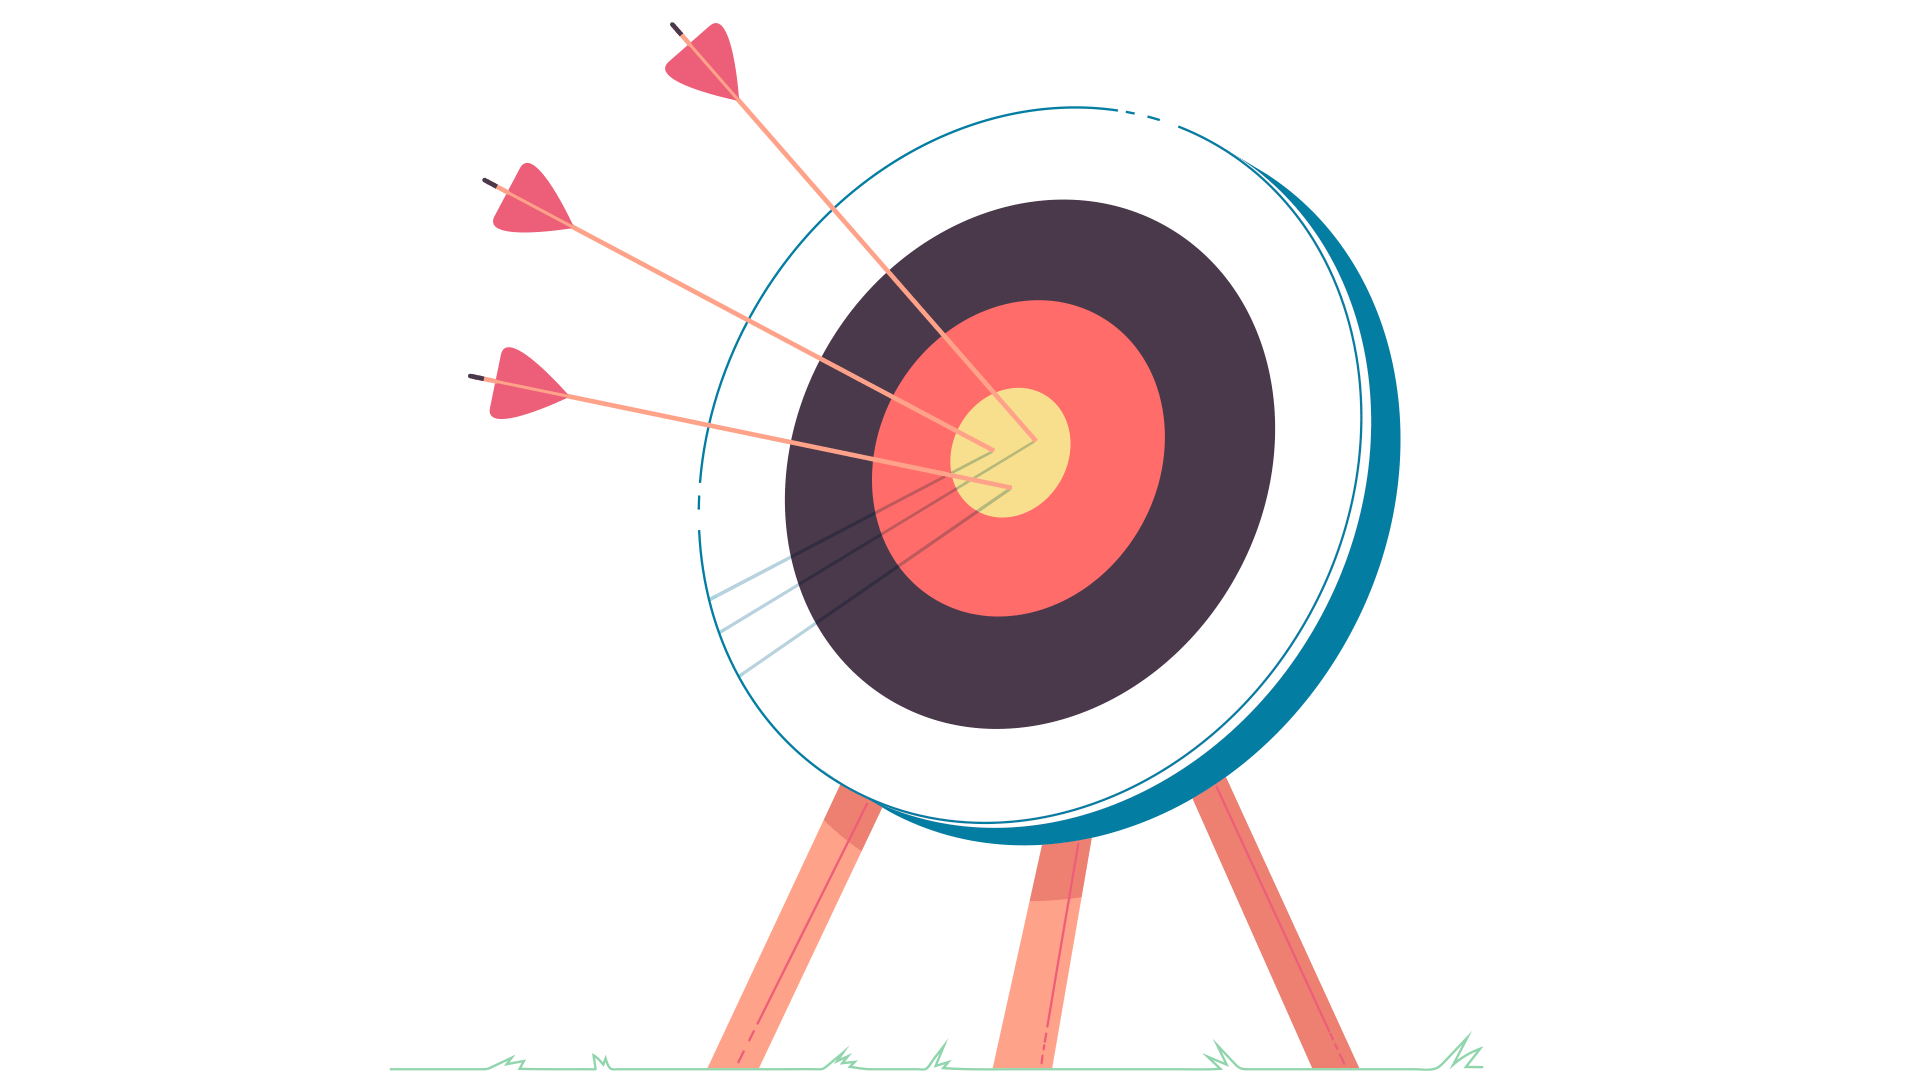 Arrows in a bullseye target.